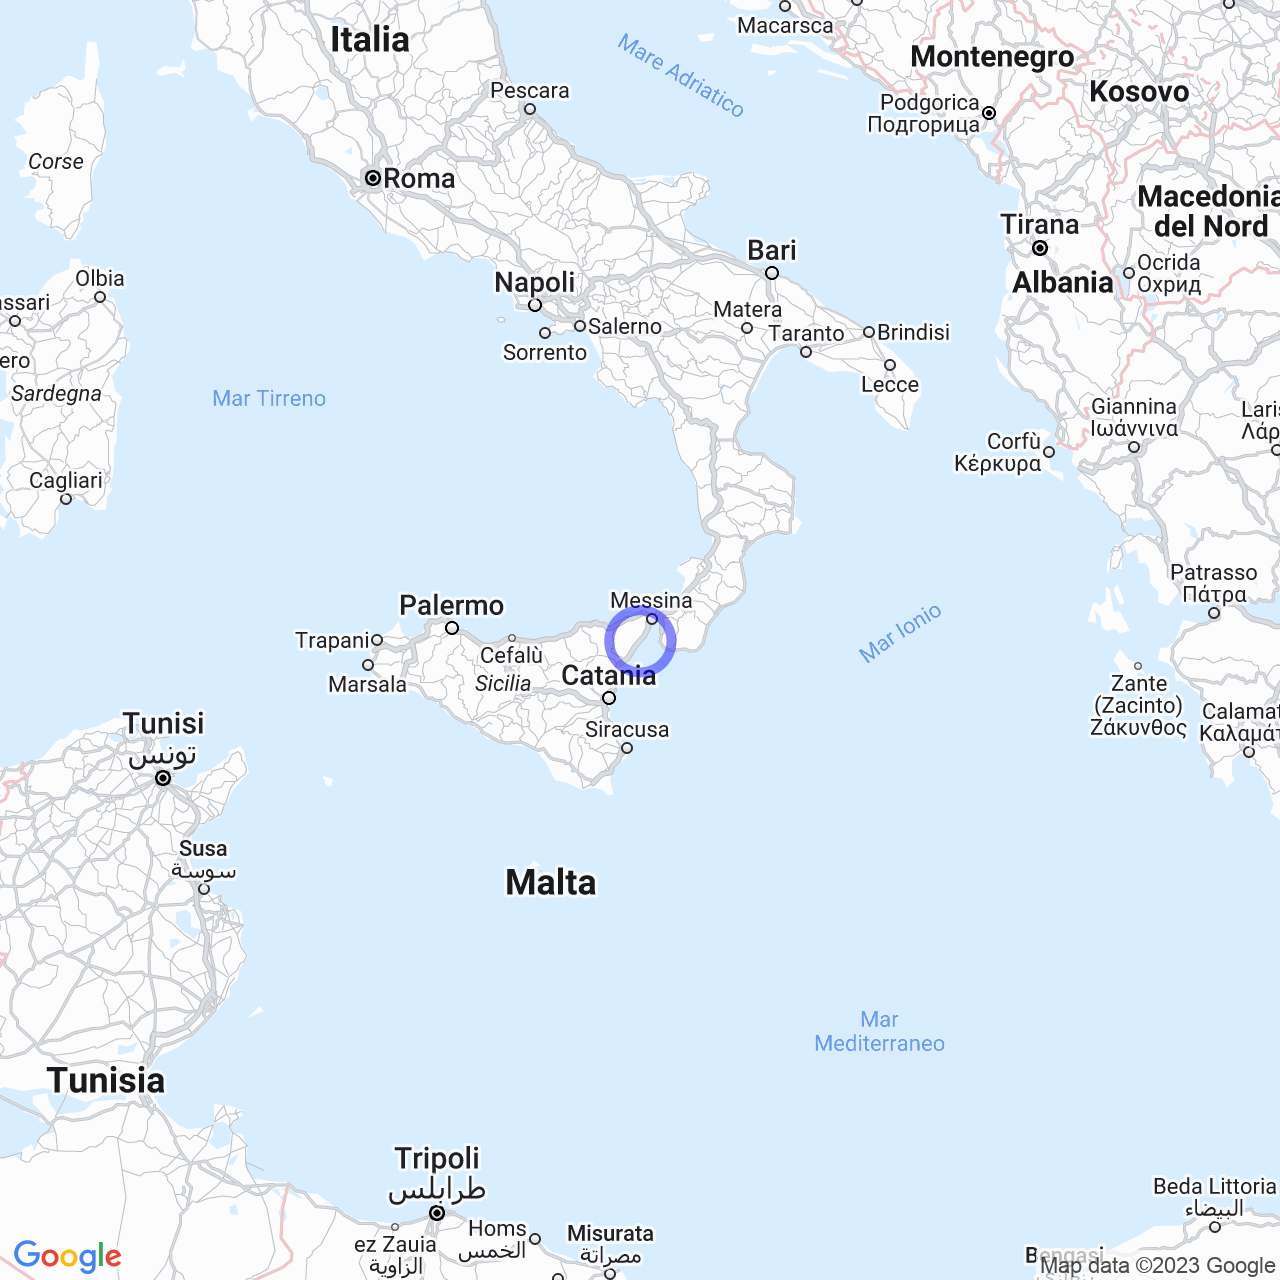 Alì Terme: la perla della costa siciliana tra mare e monti